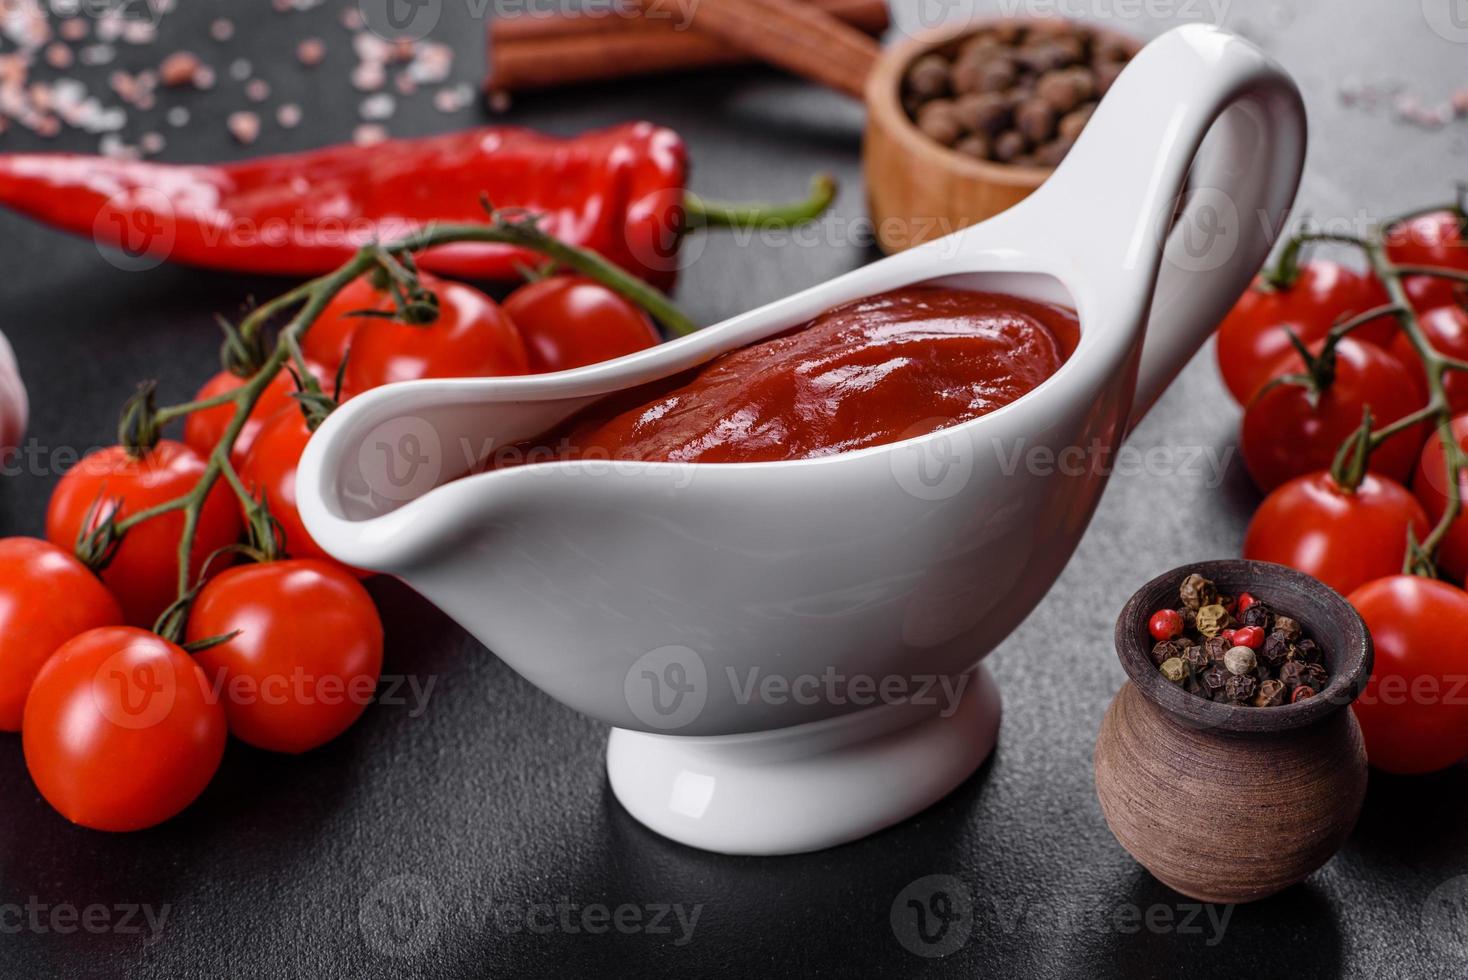 molho vermelho ou ketchup em uma tigela e ingredientes para cozinhar foto